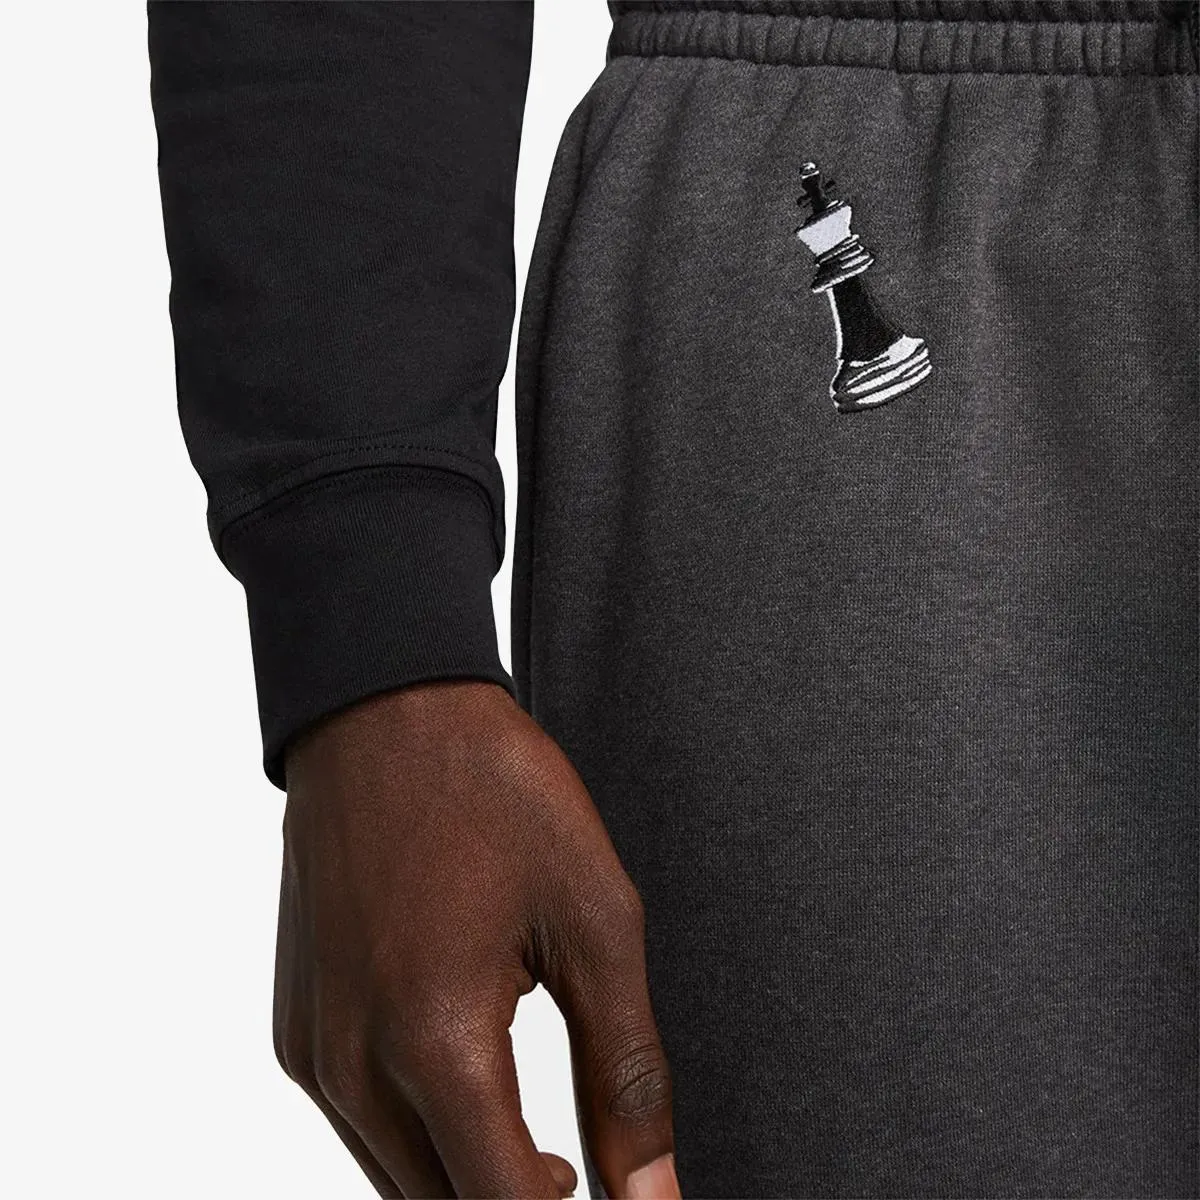 Nike LeBron 